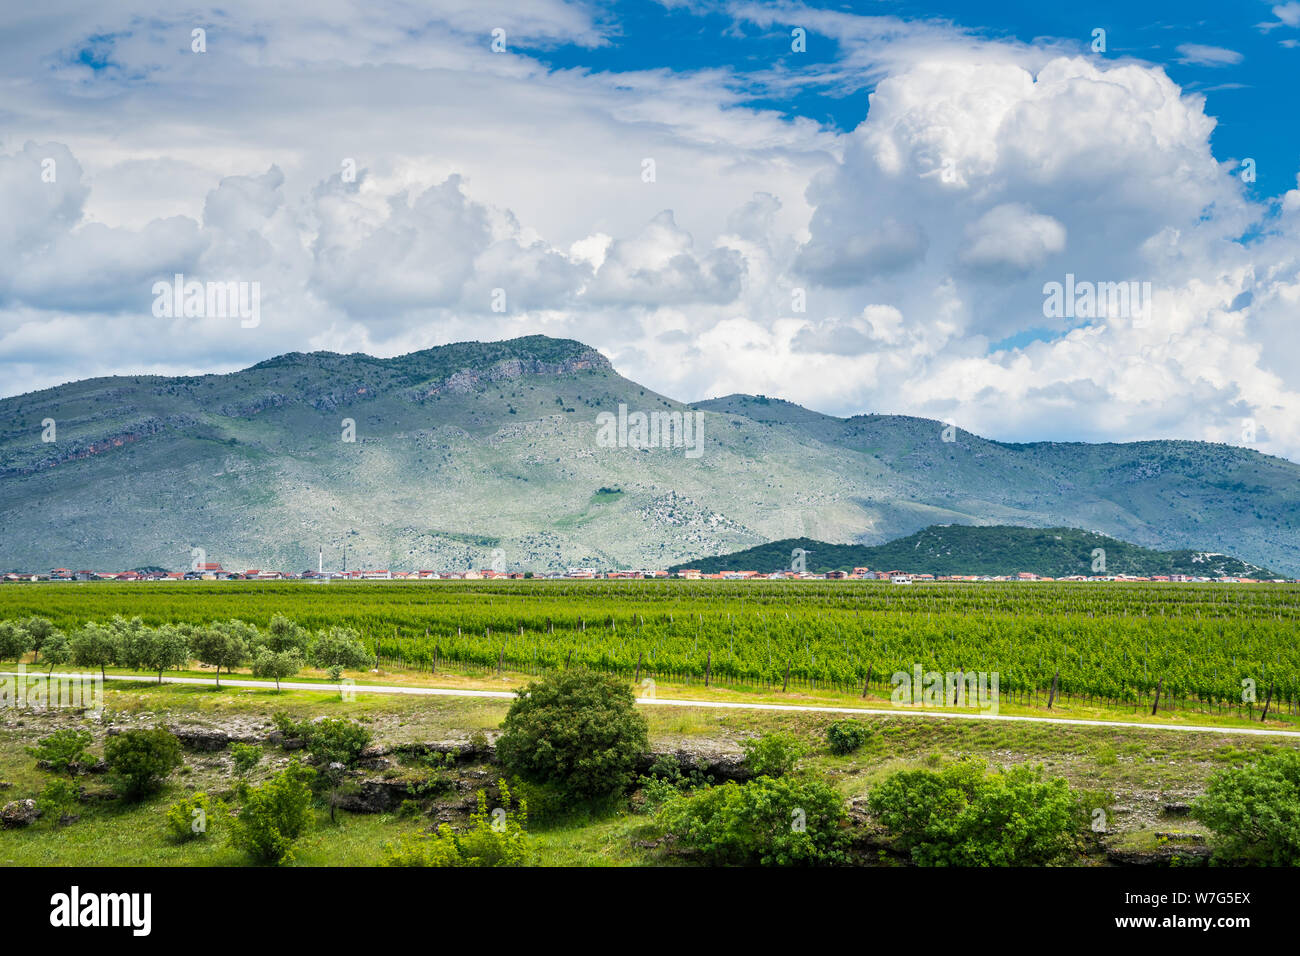 Montenegro, Weite grüne Weinberge von Wein Region podgorica Stadt neben Häuser und Berge in atemberaubender Natur Landschaft Stockfoto